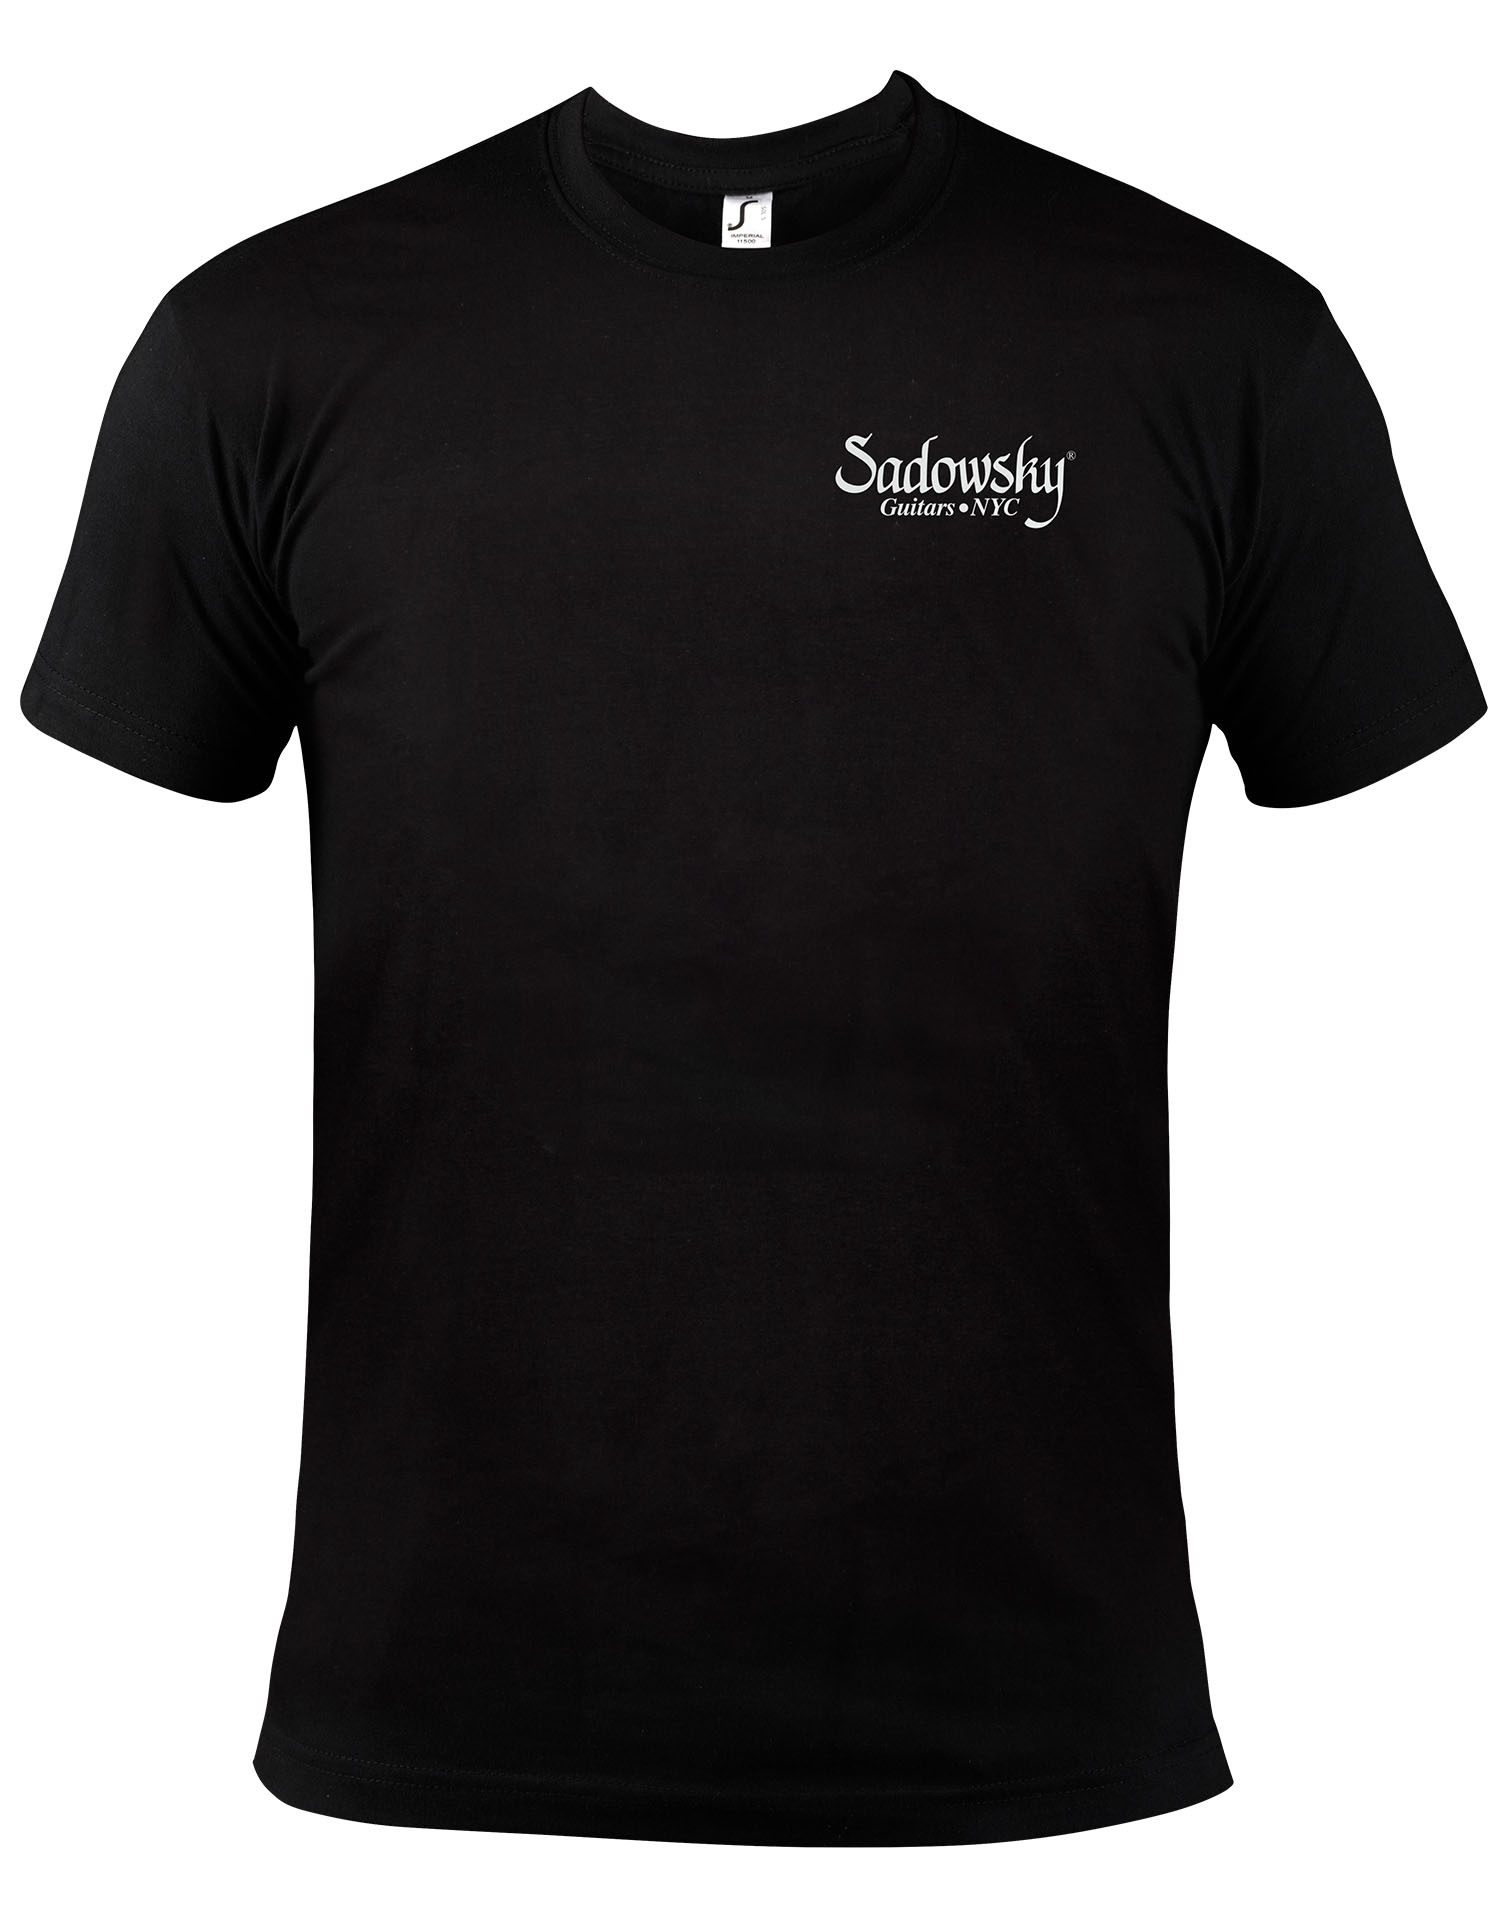 Sadowsky Promo - Logo T-Shirt, Black with White Print - Size L